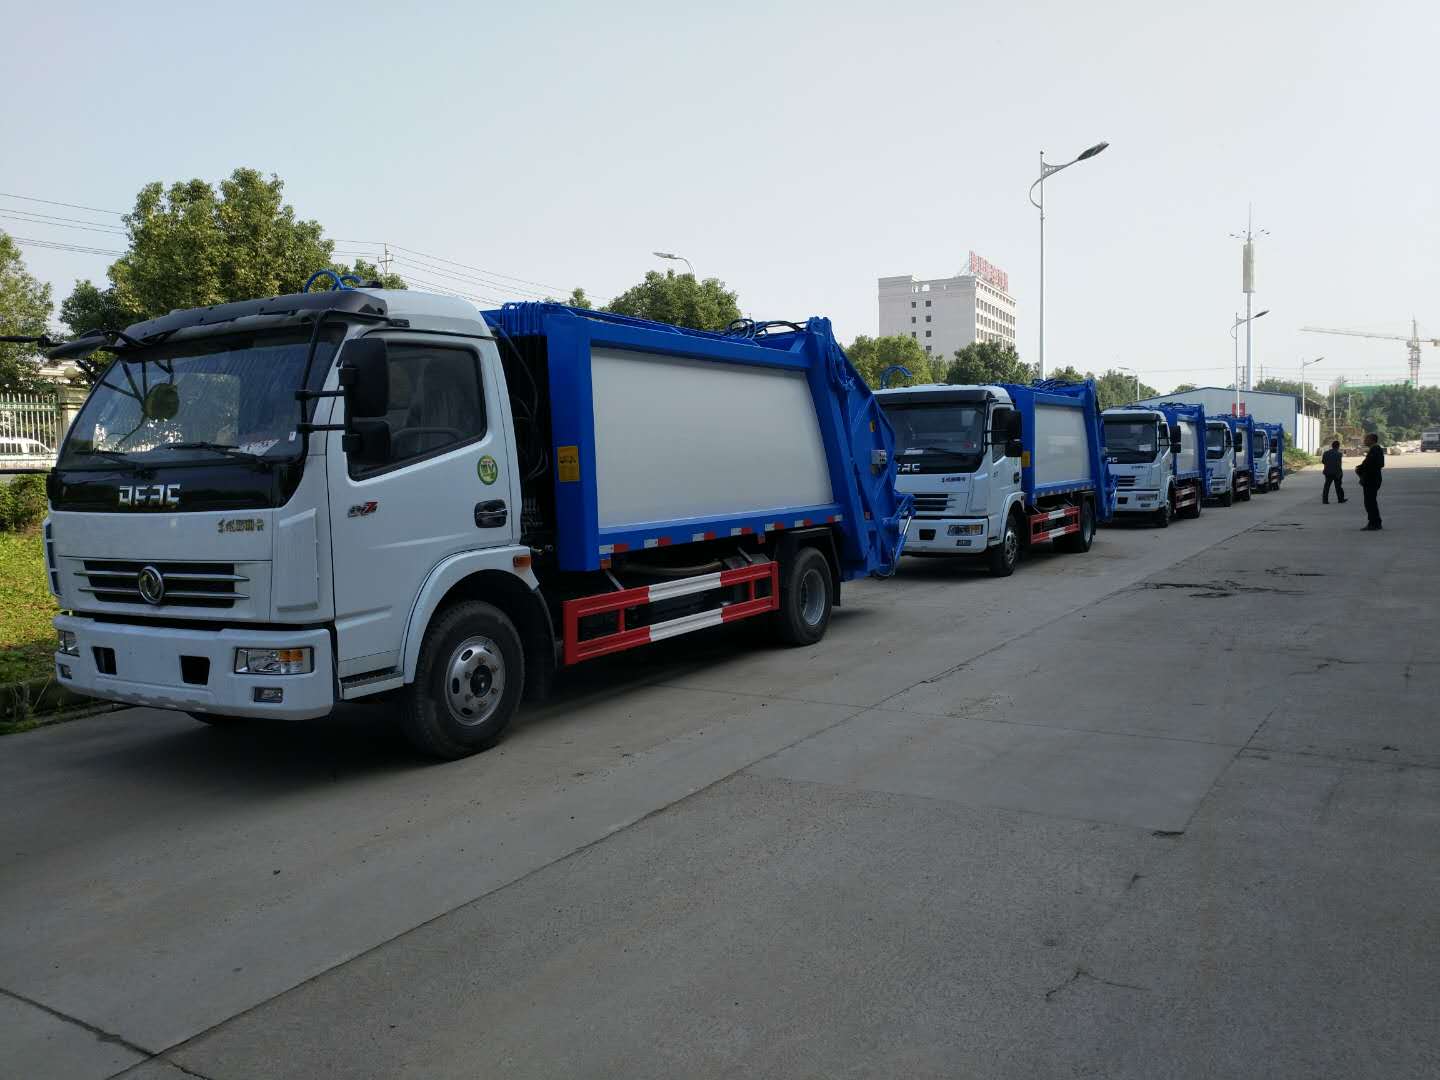 庆阳地区8吨垃圾压缩车出售_东风桶装垃圾运输车